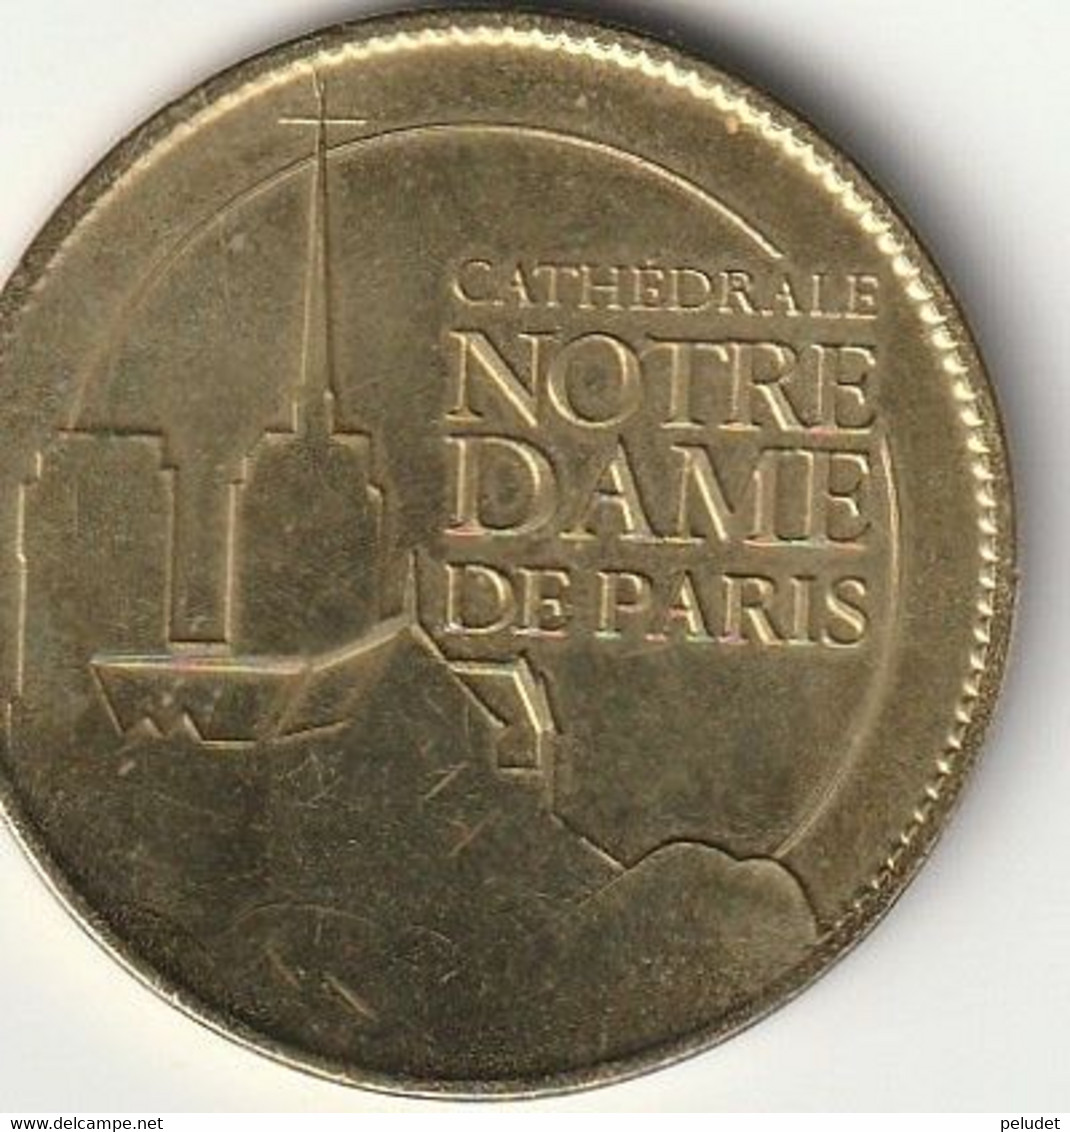 Cathedrale Notre Dame De Paris, Médaille Souvenir (jeton Touristique) Monnaie De Paris Arthus Bertrand - Non-datés